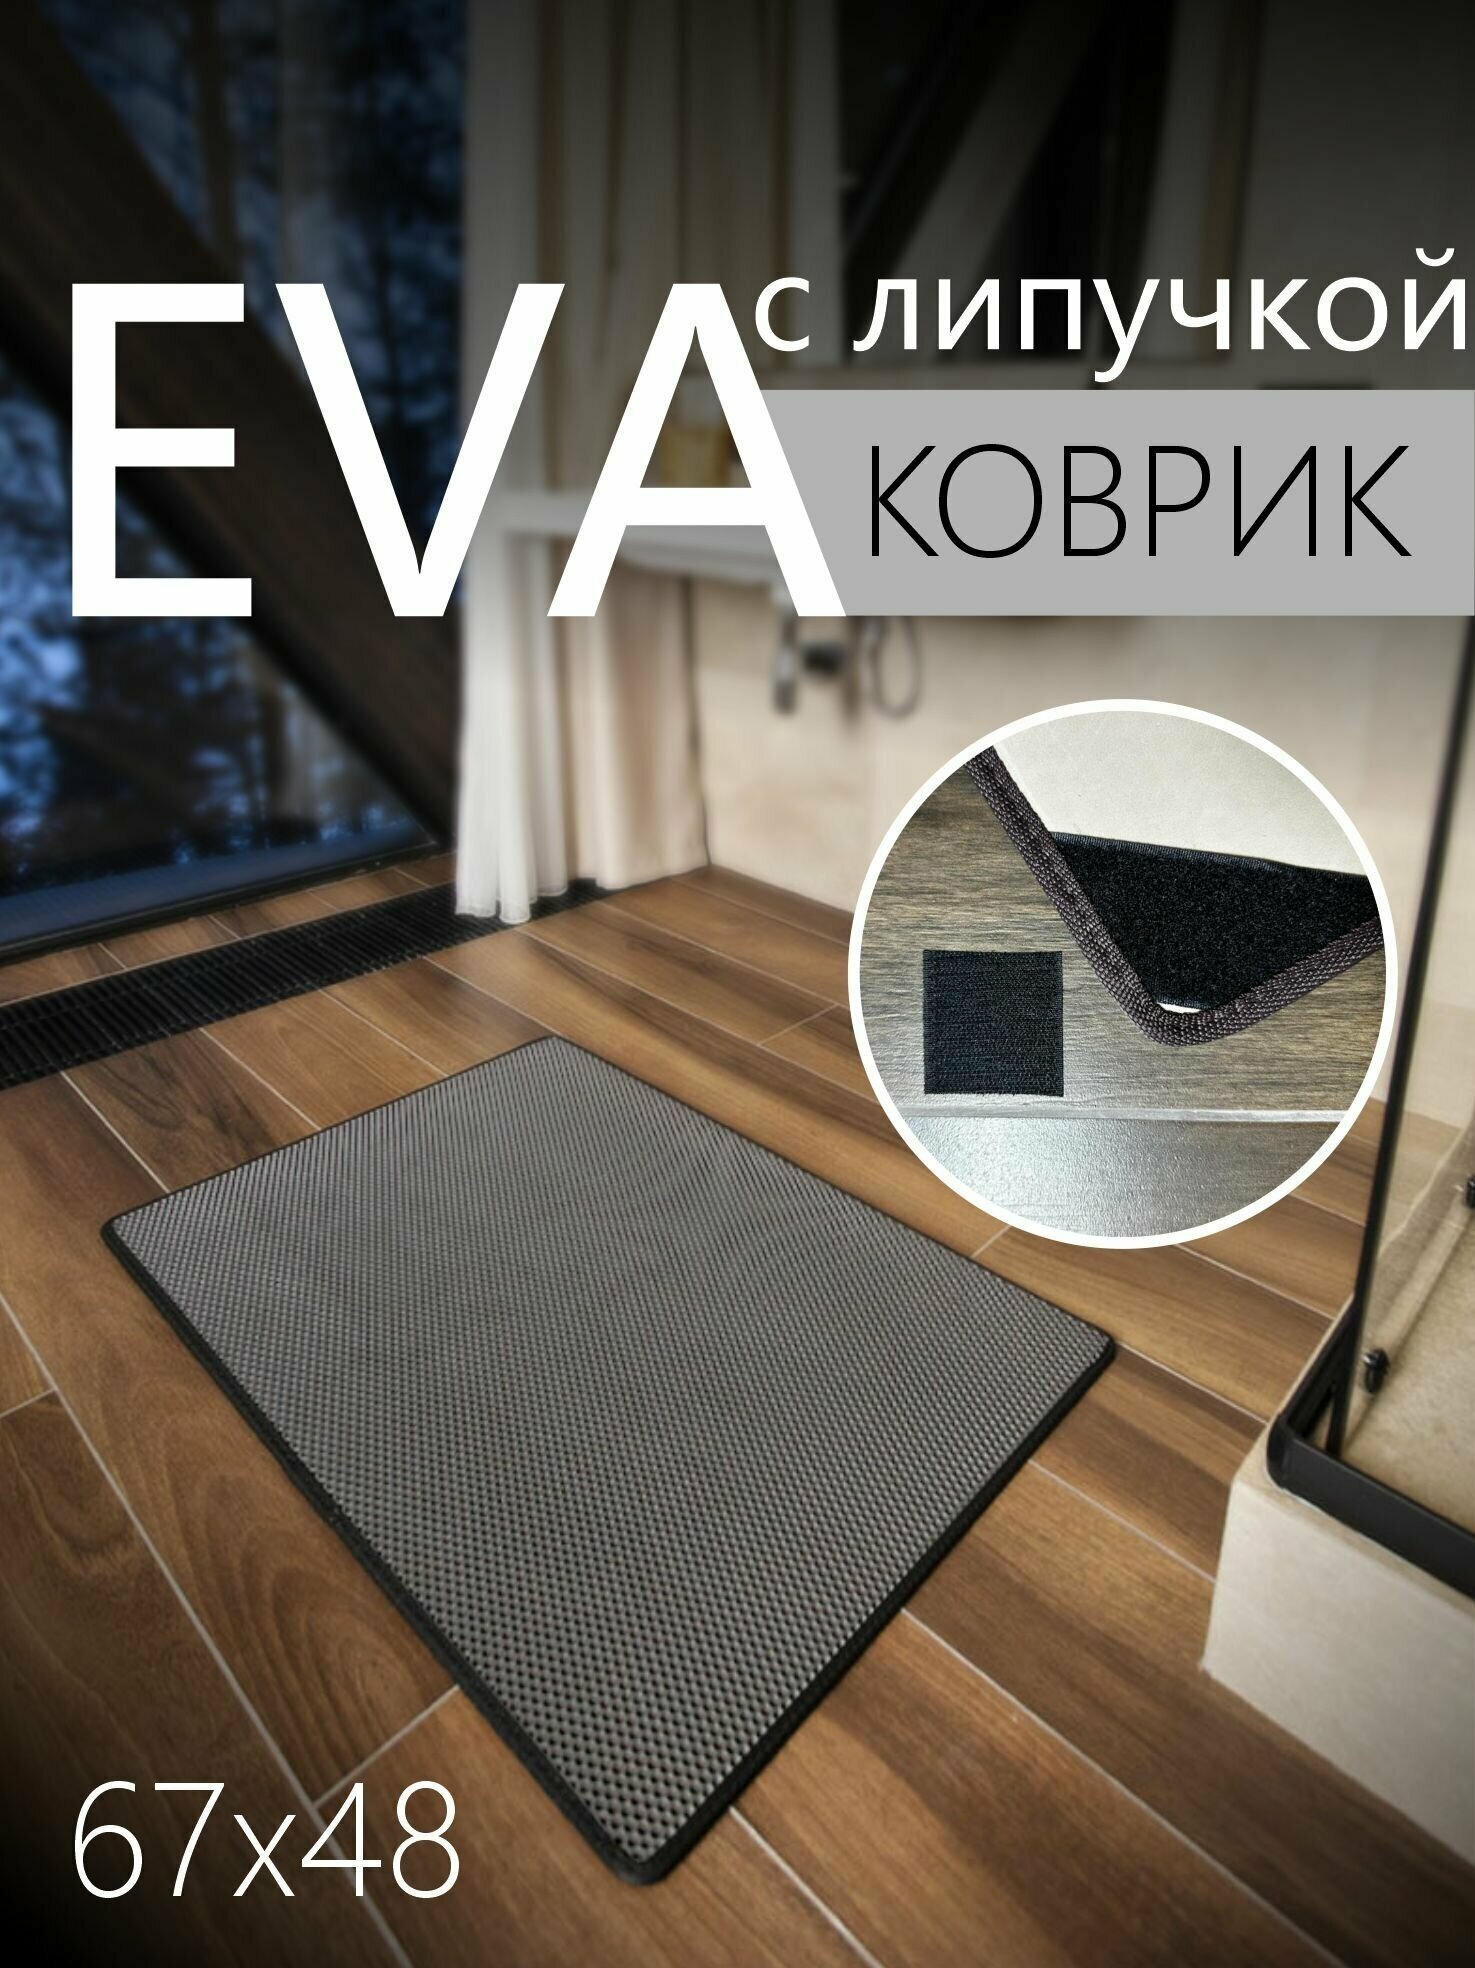 Коврик придверный противоскользящий EVA ЭВА универсальный 67х48 сантиметров. Липучки для фиксации. Соты Серый с черной окантовкой